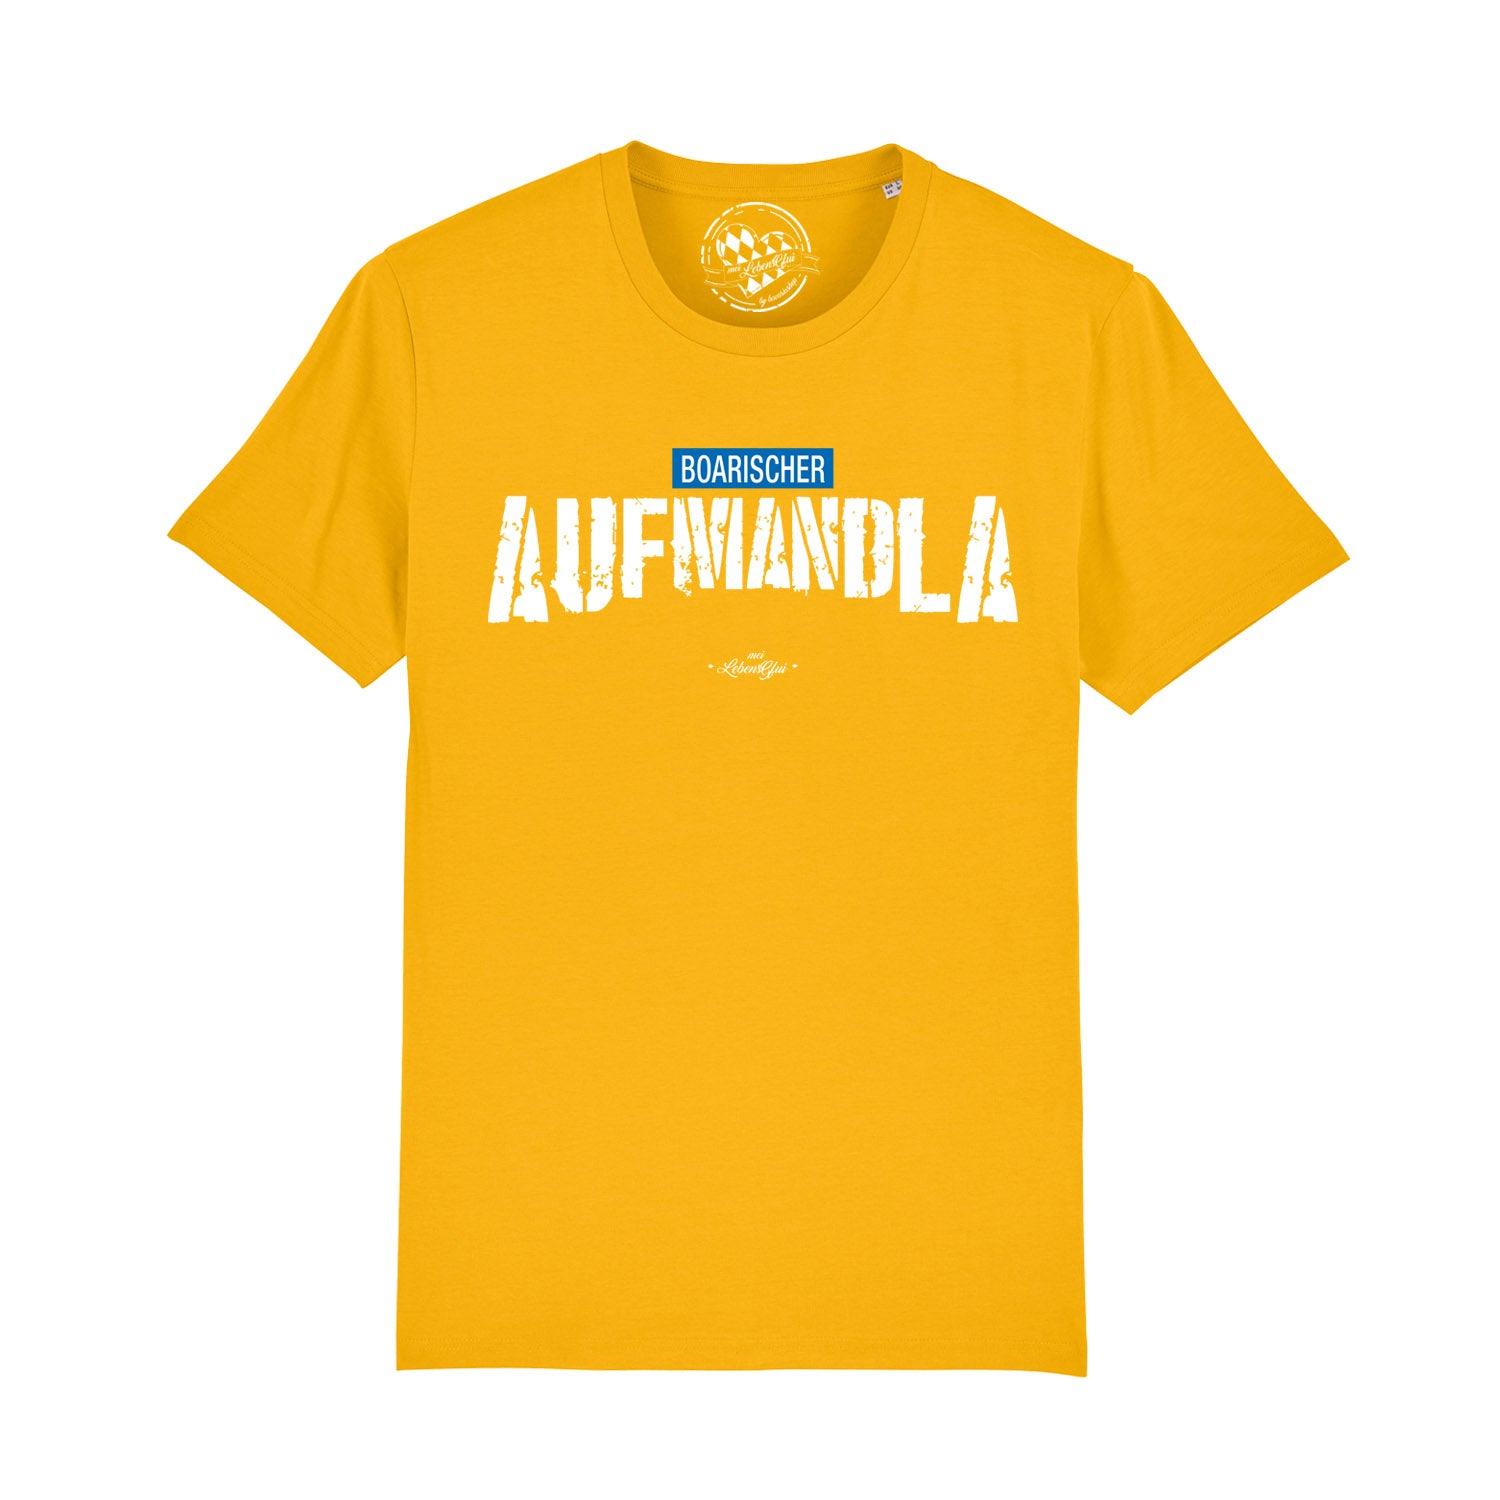 Herren T-Shirt "Aufmandla" - bavariashop - mei LebensGfui